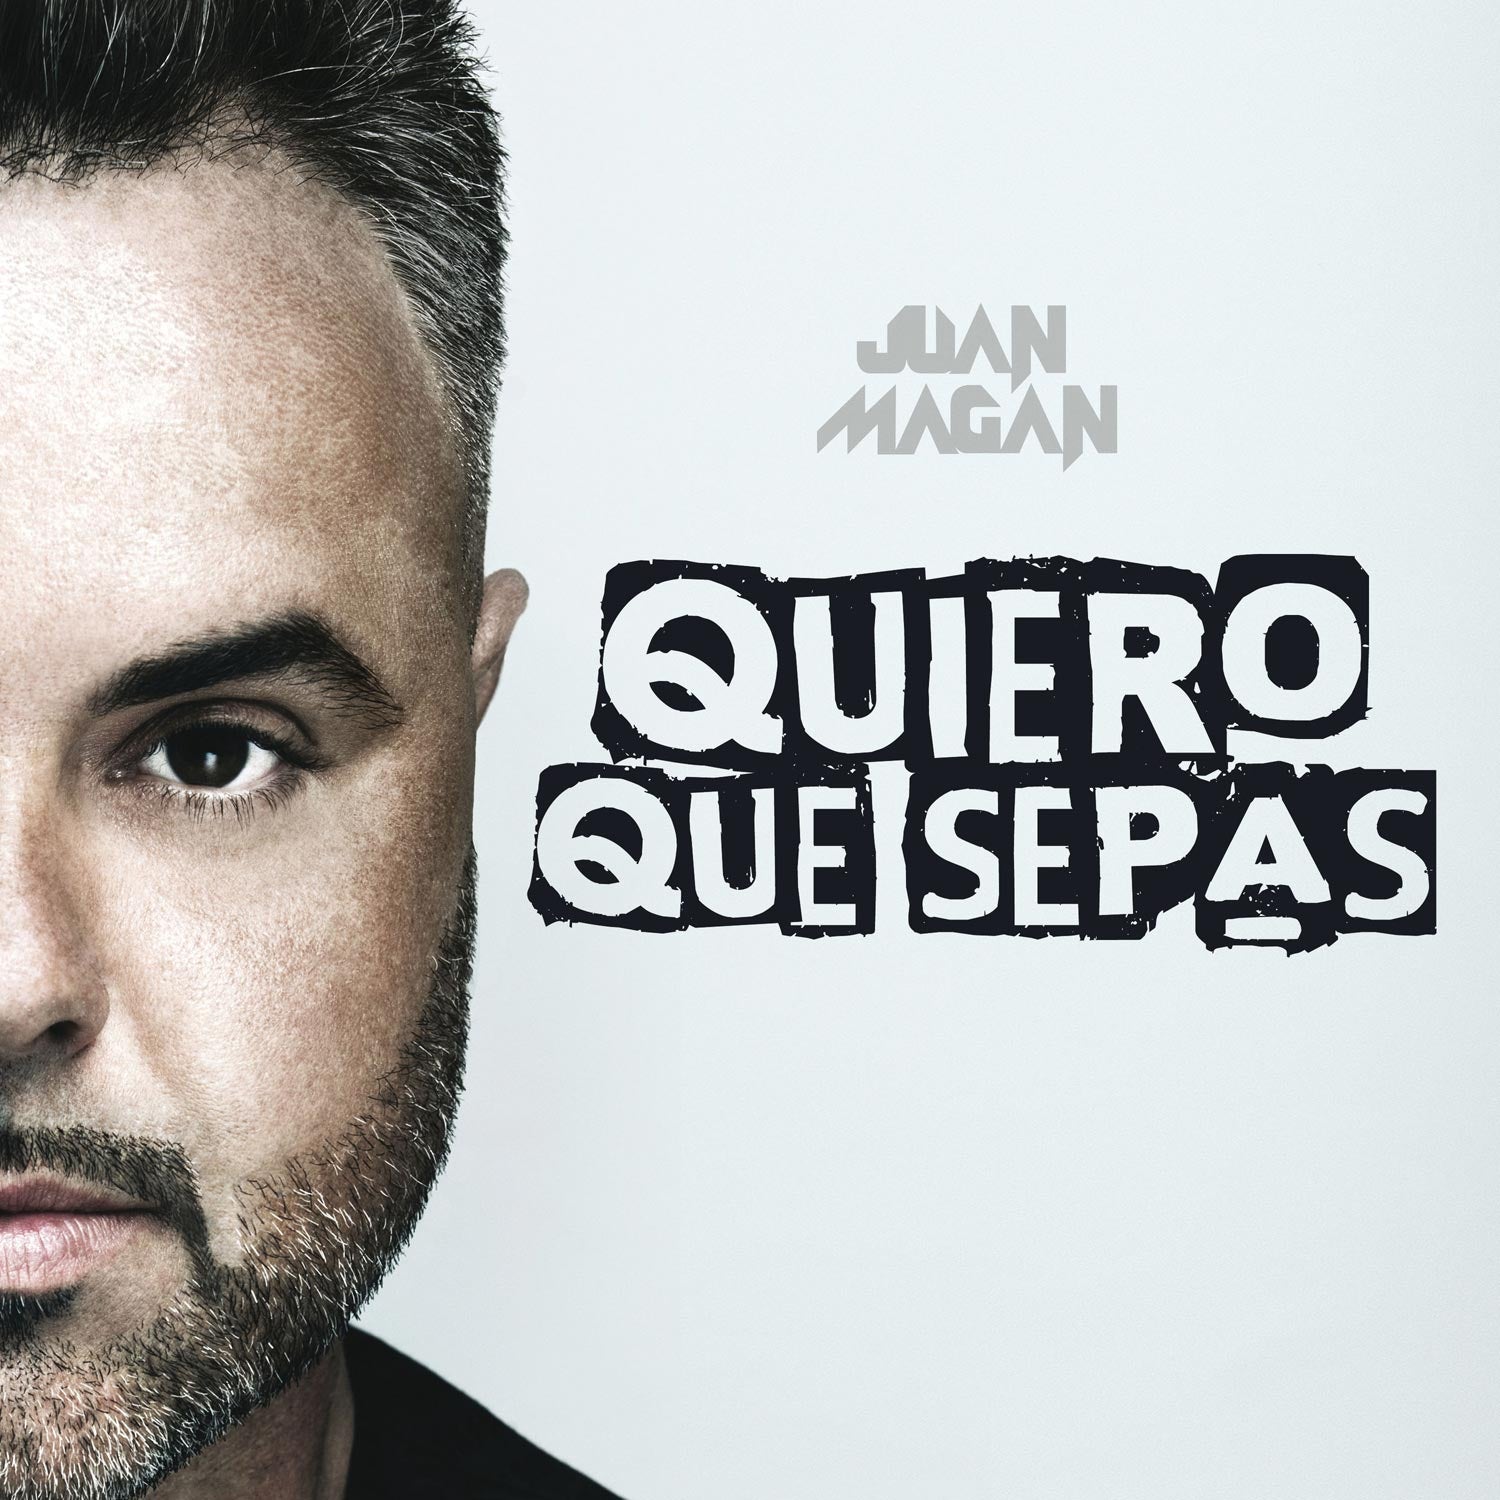 CD Juan Magan - Quiero Que Sepas